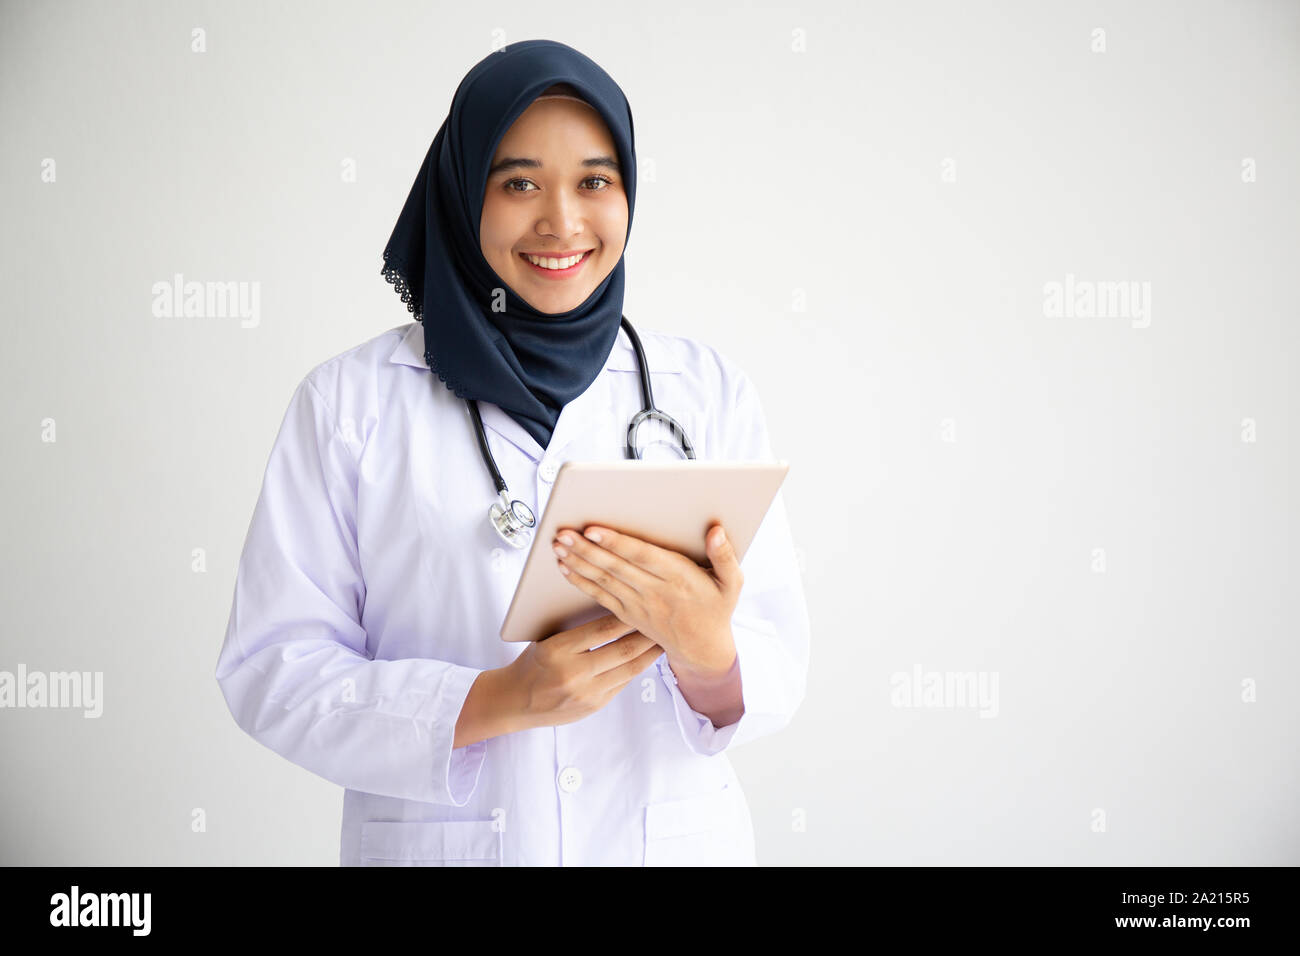 Junge arabische muslimische Aerztin Frauen lächeln auf weißem Hintergrund Konzept für den Islam Menschen in medizinischen Klinik health care Arbeiten isolieren, modernen Krankenschwester Stockfoto